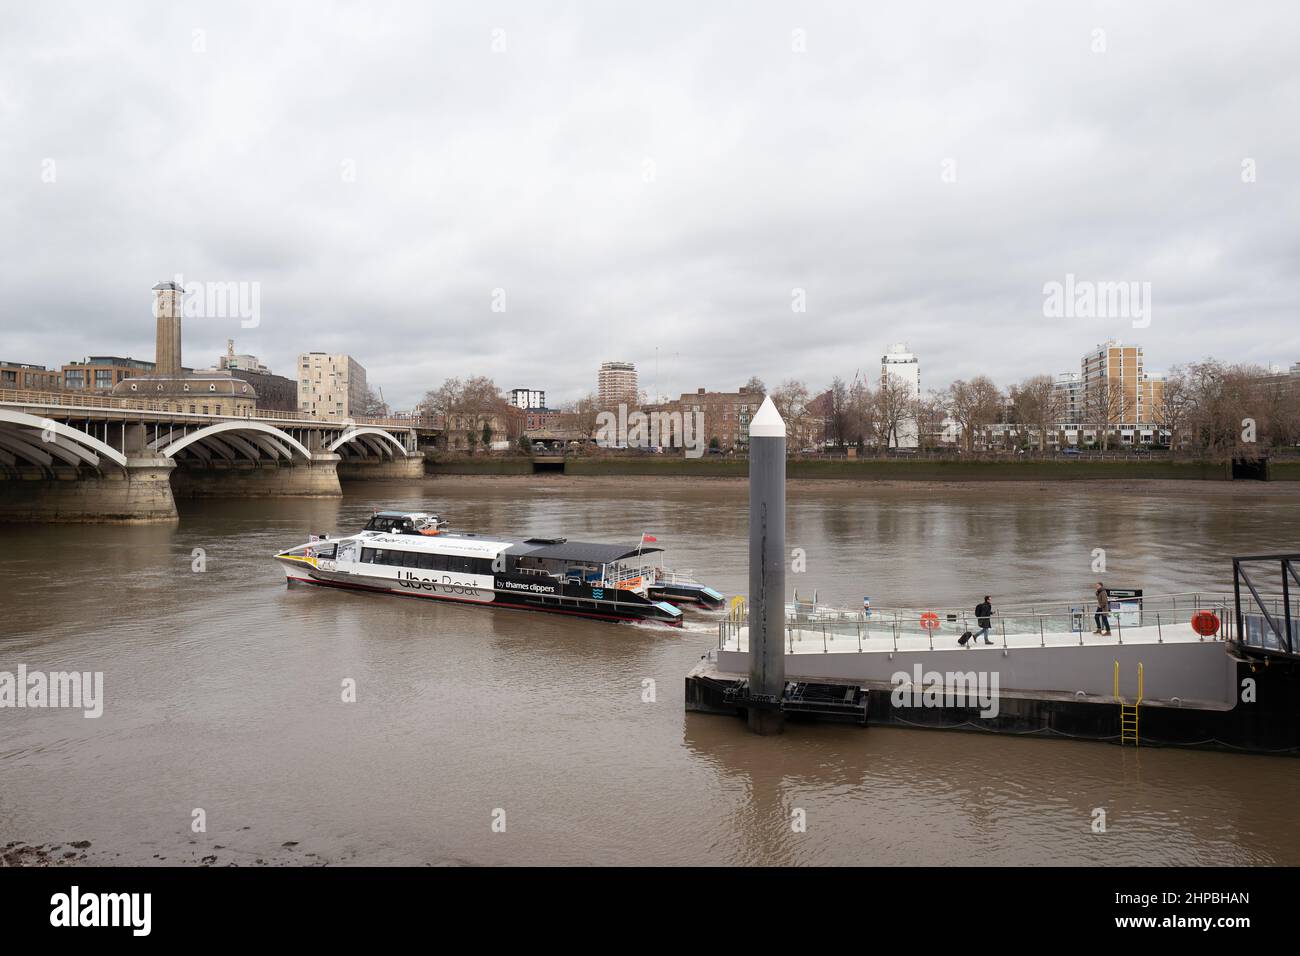 Ein von Uber gesponsertes Flussboot verlässt den Anlegesteg auf der Themse im Battersea Power Station, London, Großbritannien Stockfoto